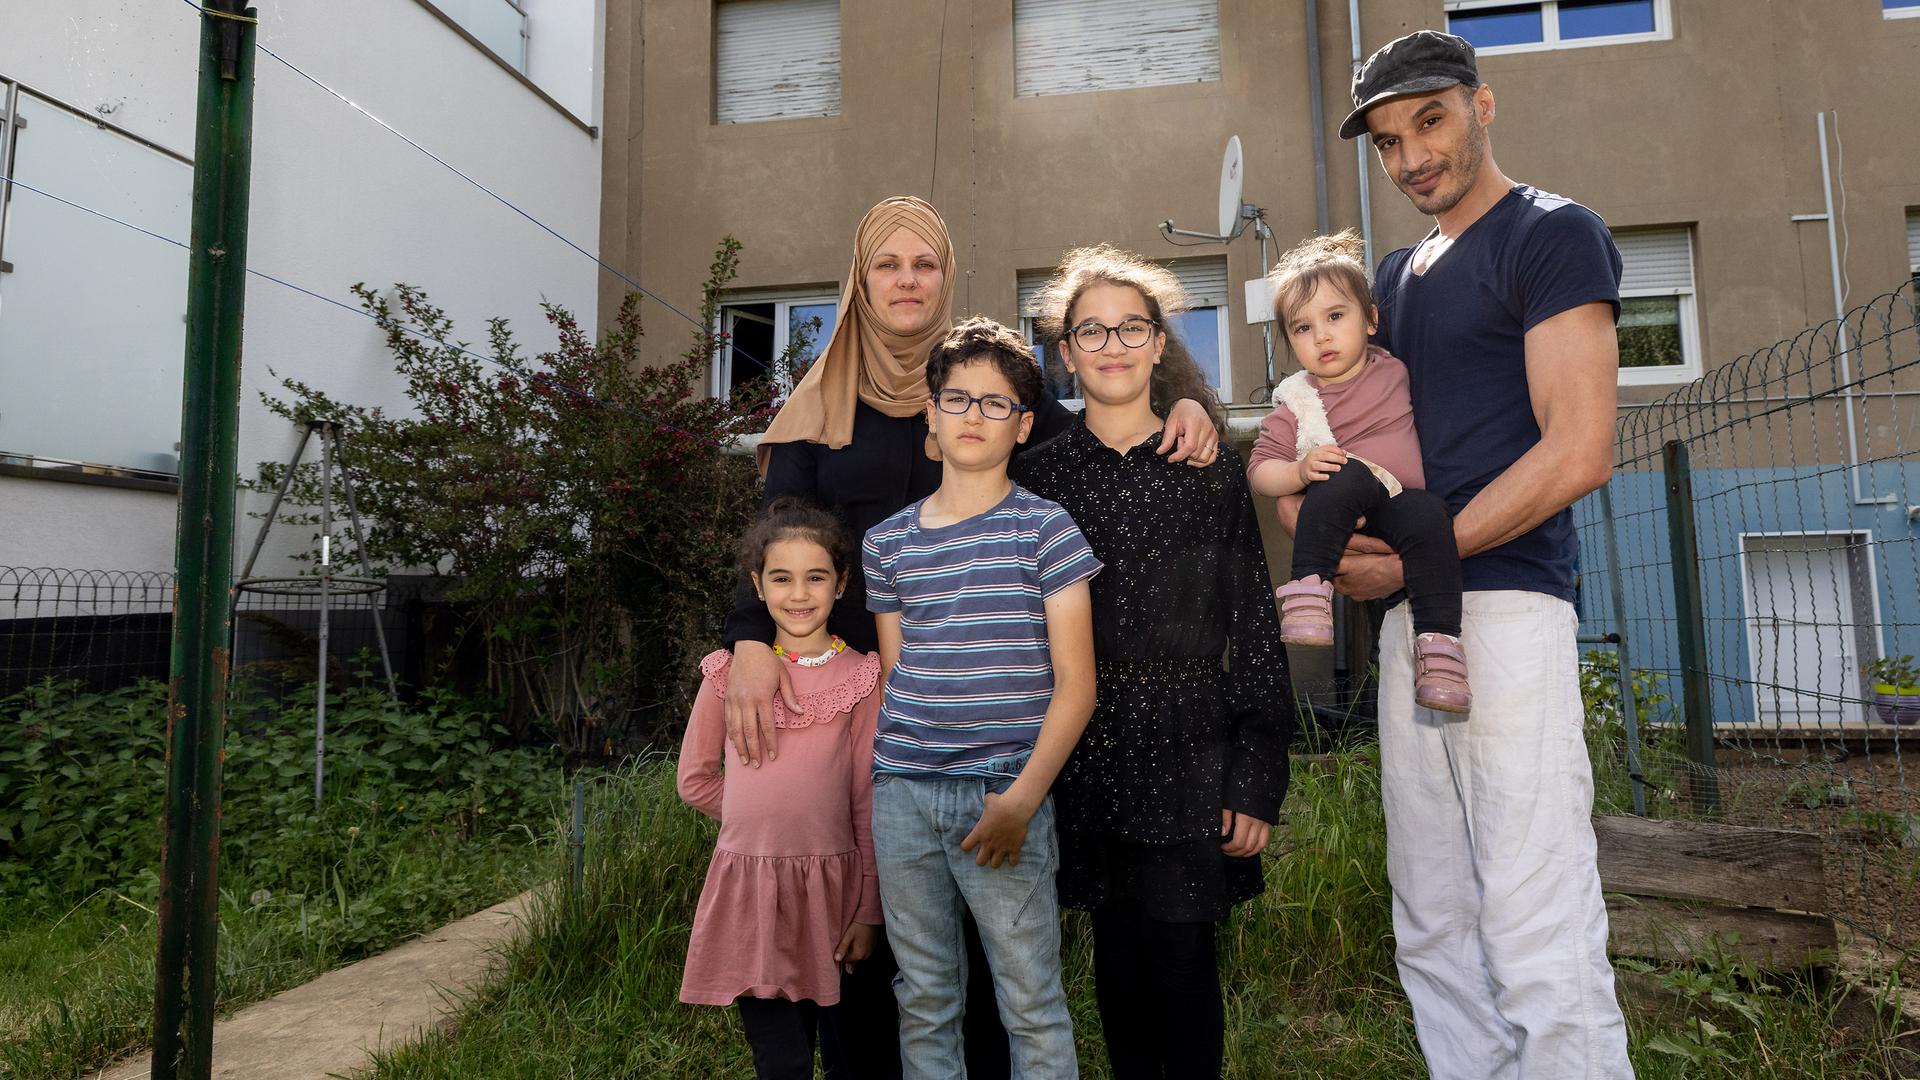 Une dernière photo de famille devant leur "encore maison" : depuis deux ans, la famille Berkhli de Pétange est à la recherche d'un logement - sans succès jusqu'à présent. 